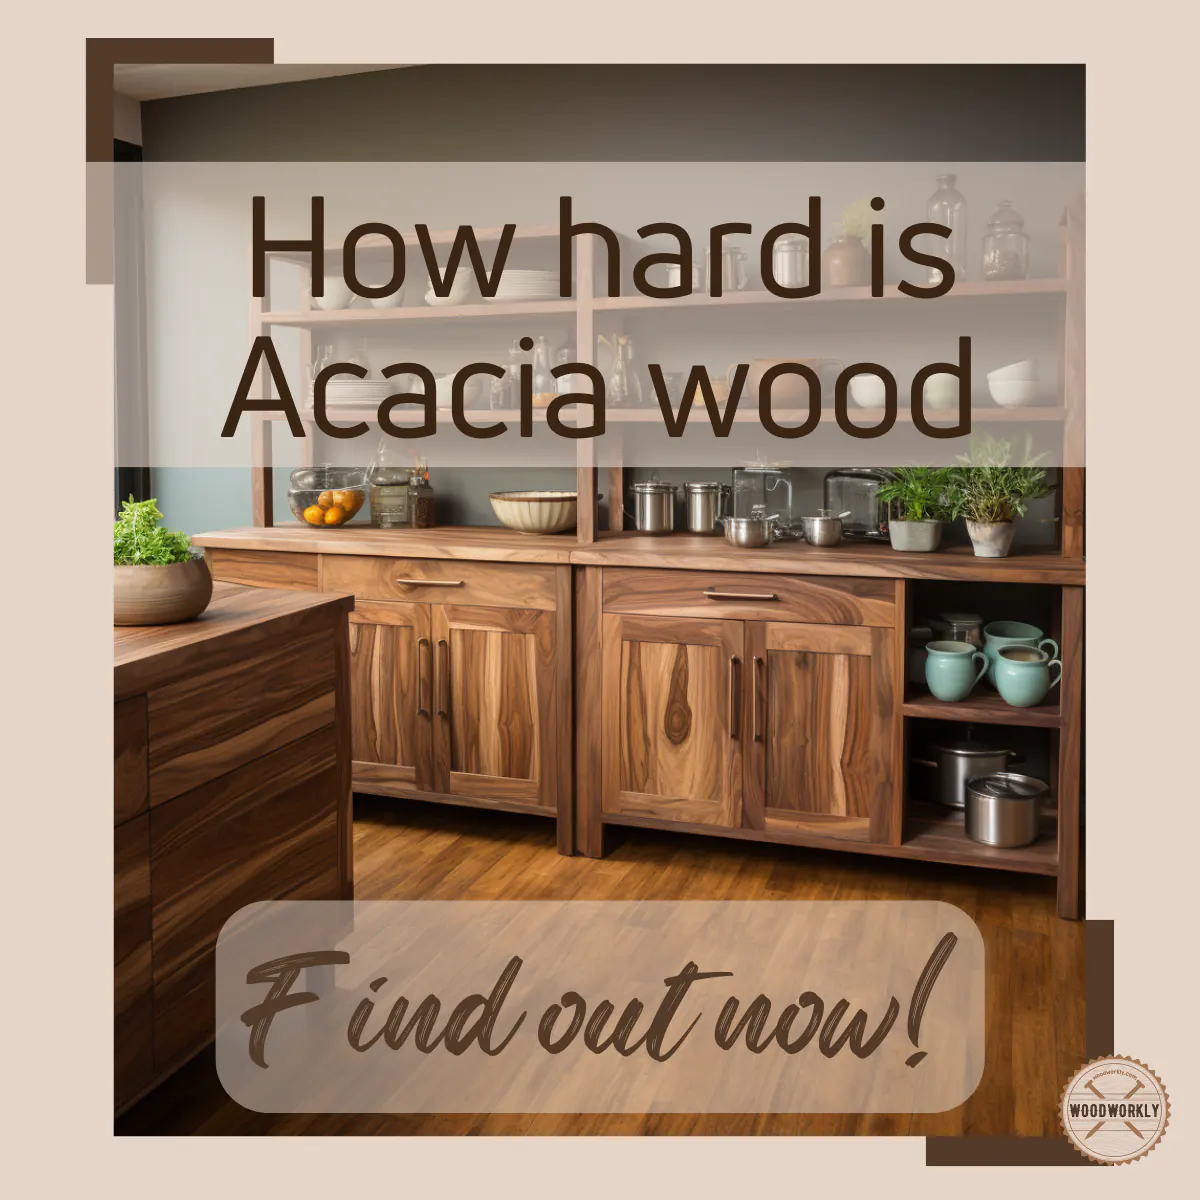 How hard is Acacia wood